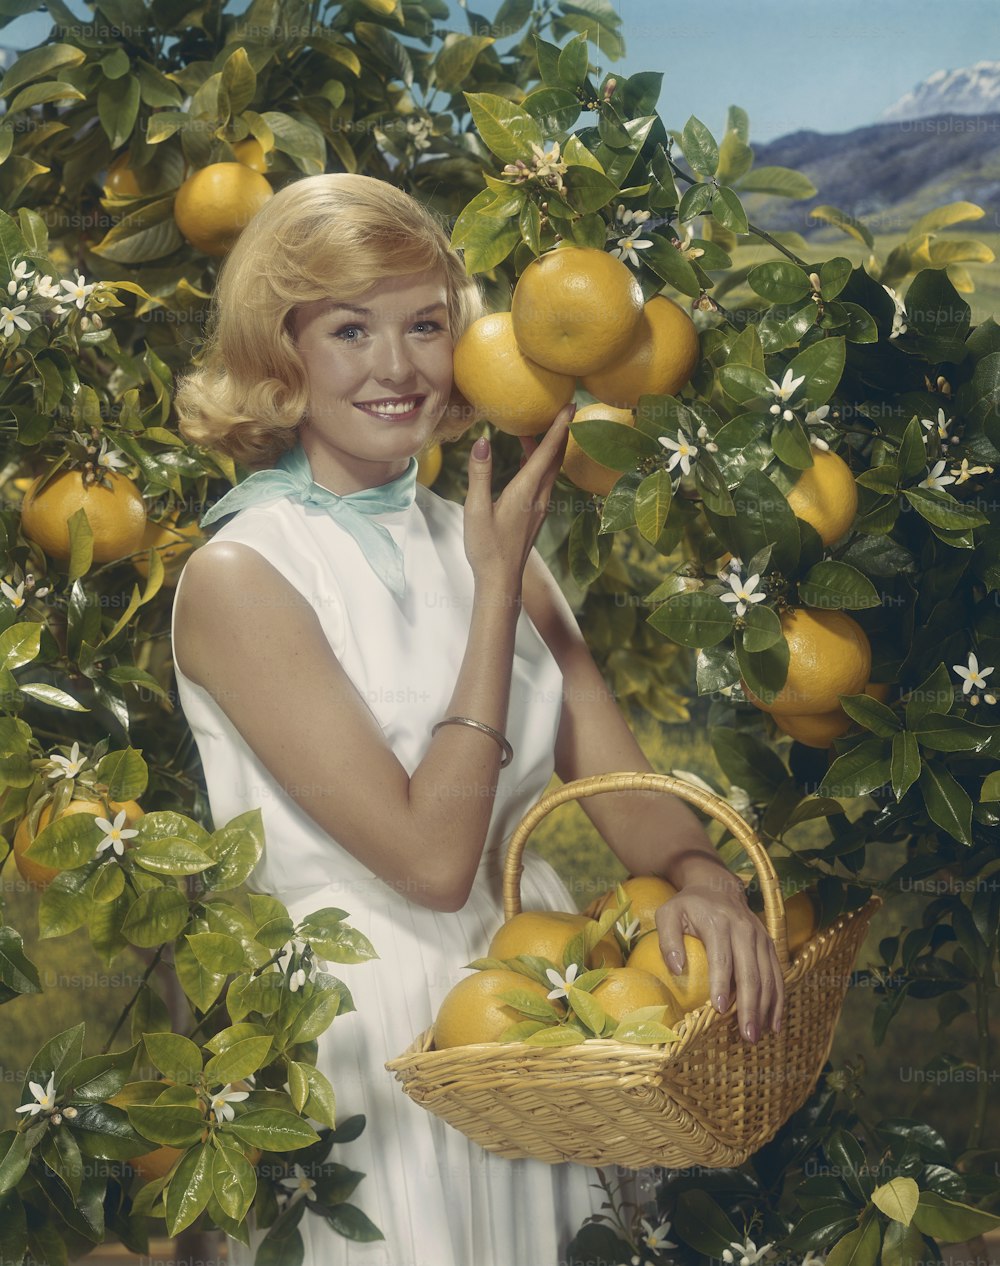 레몬 바구니를 들고 있는 여자의 그림